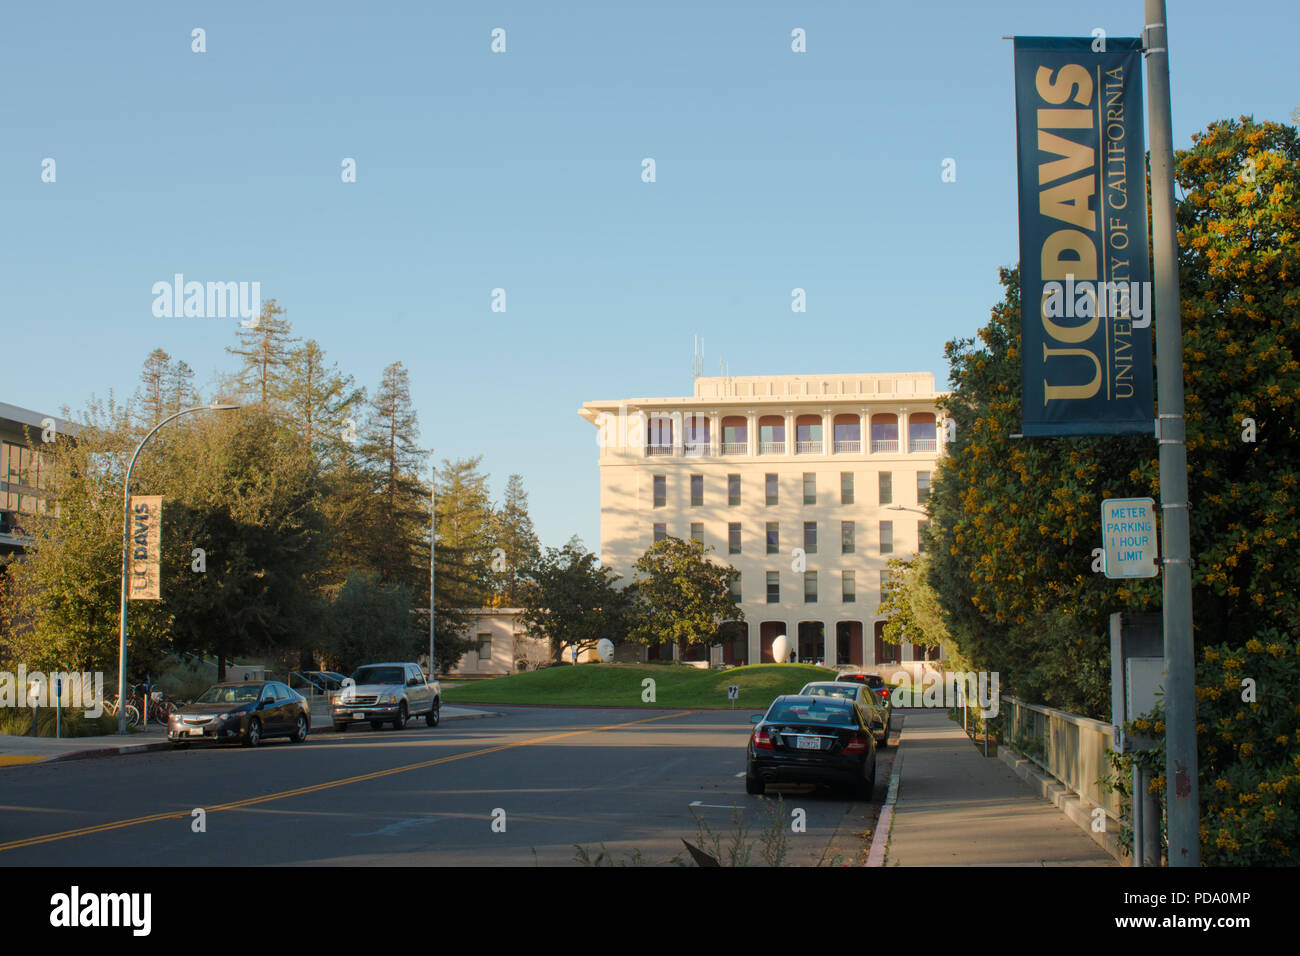 DAVIS EN CALIFORNIE, le 23 novembre 2016, à la recherche en bas de la rue à l'égard Mrak Hall, sur l'Université de Californie, Davis campus. Banque D'Images